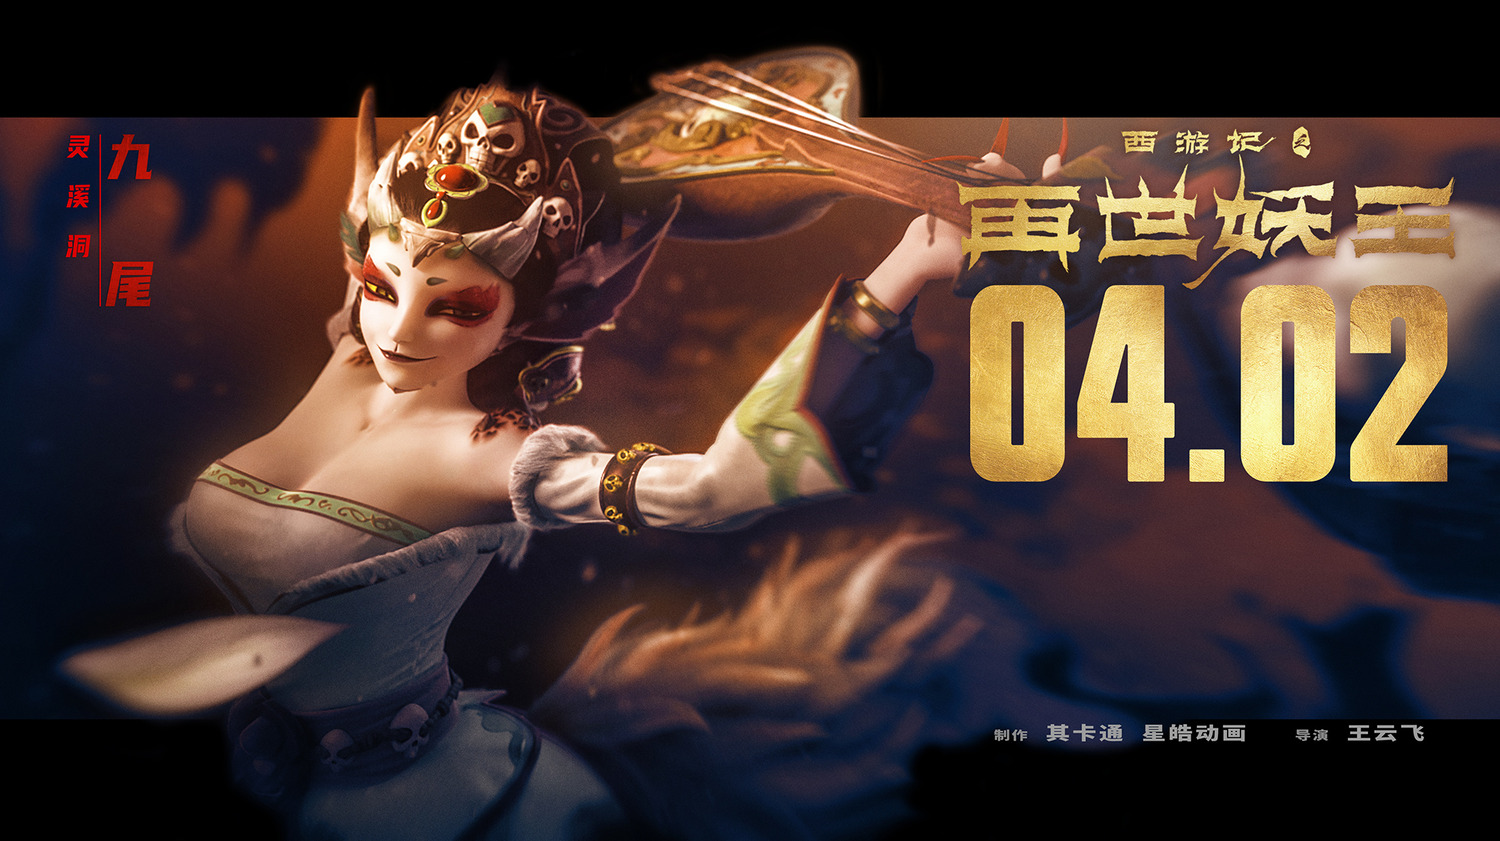 Extra Large Movie Poster Image for Xi You Ji Zhi Zai Shi Yao Wang (#8 of 21)